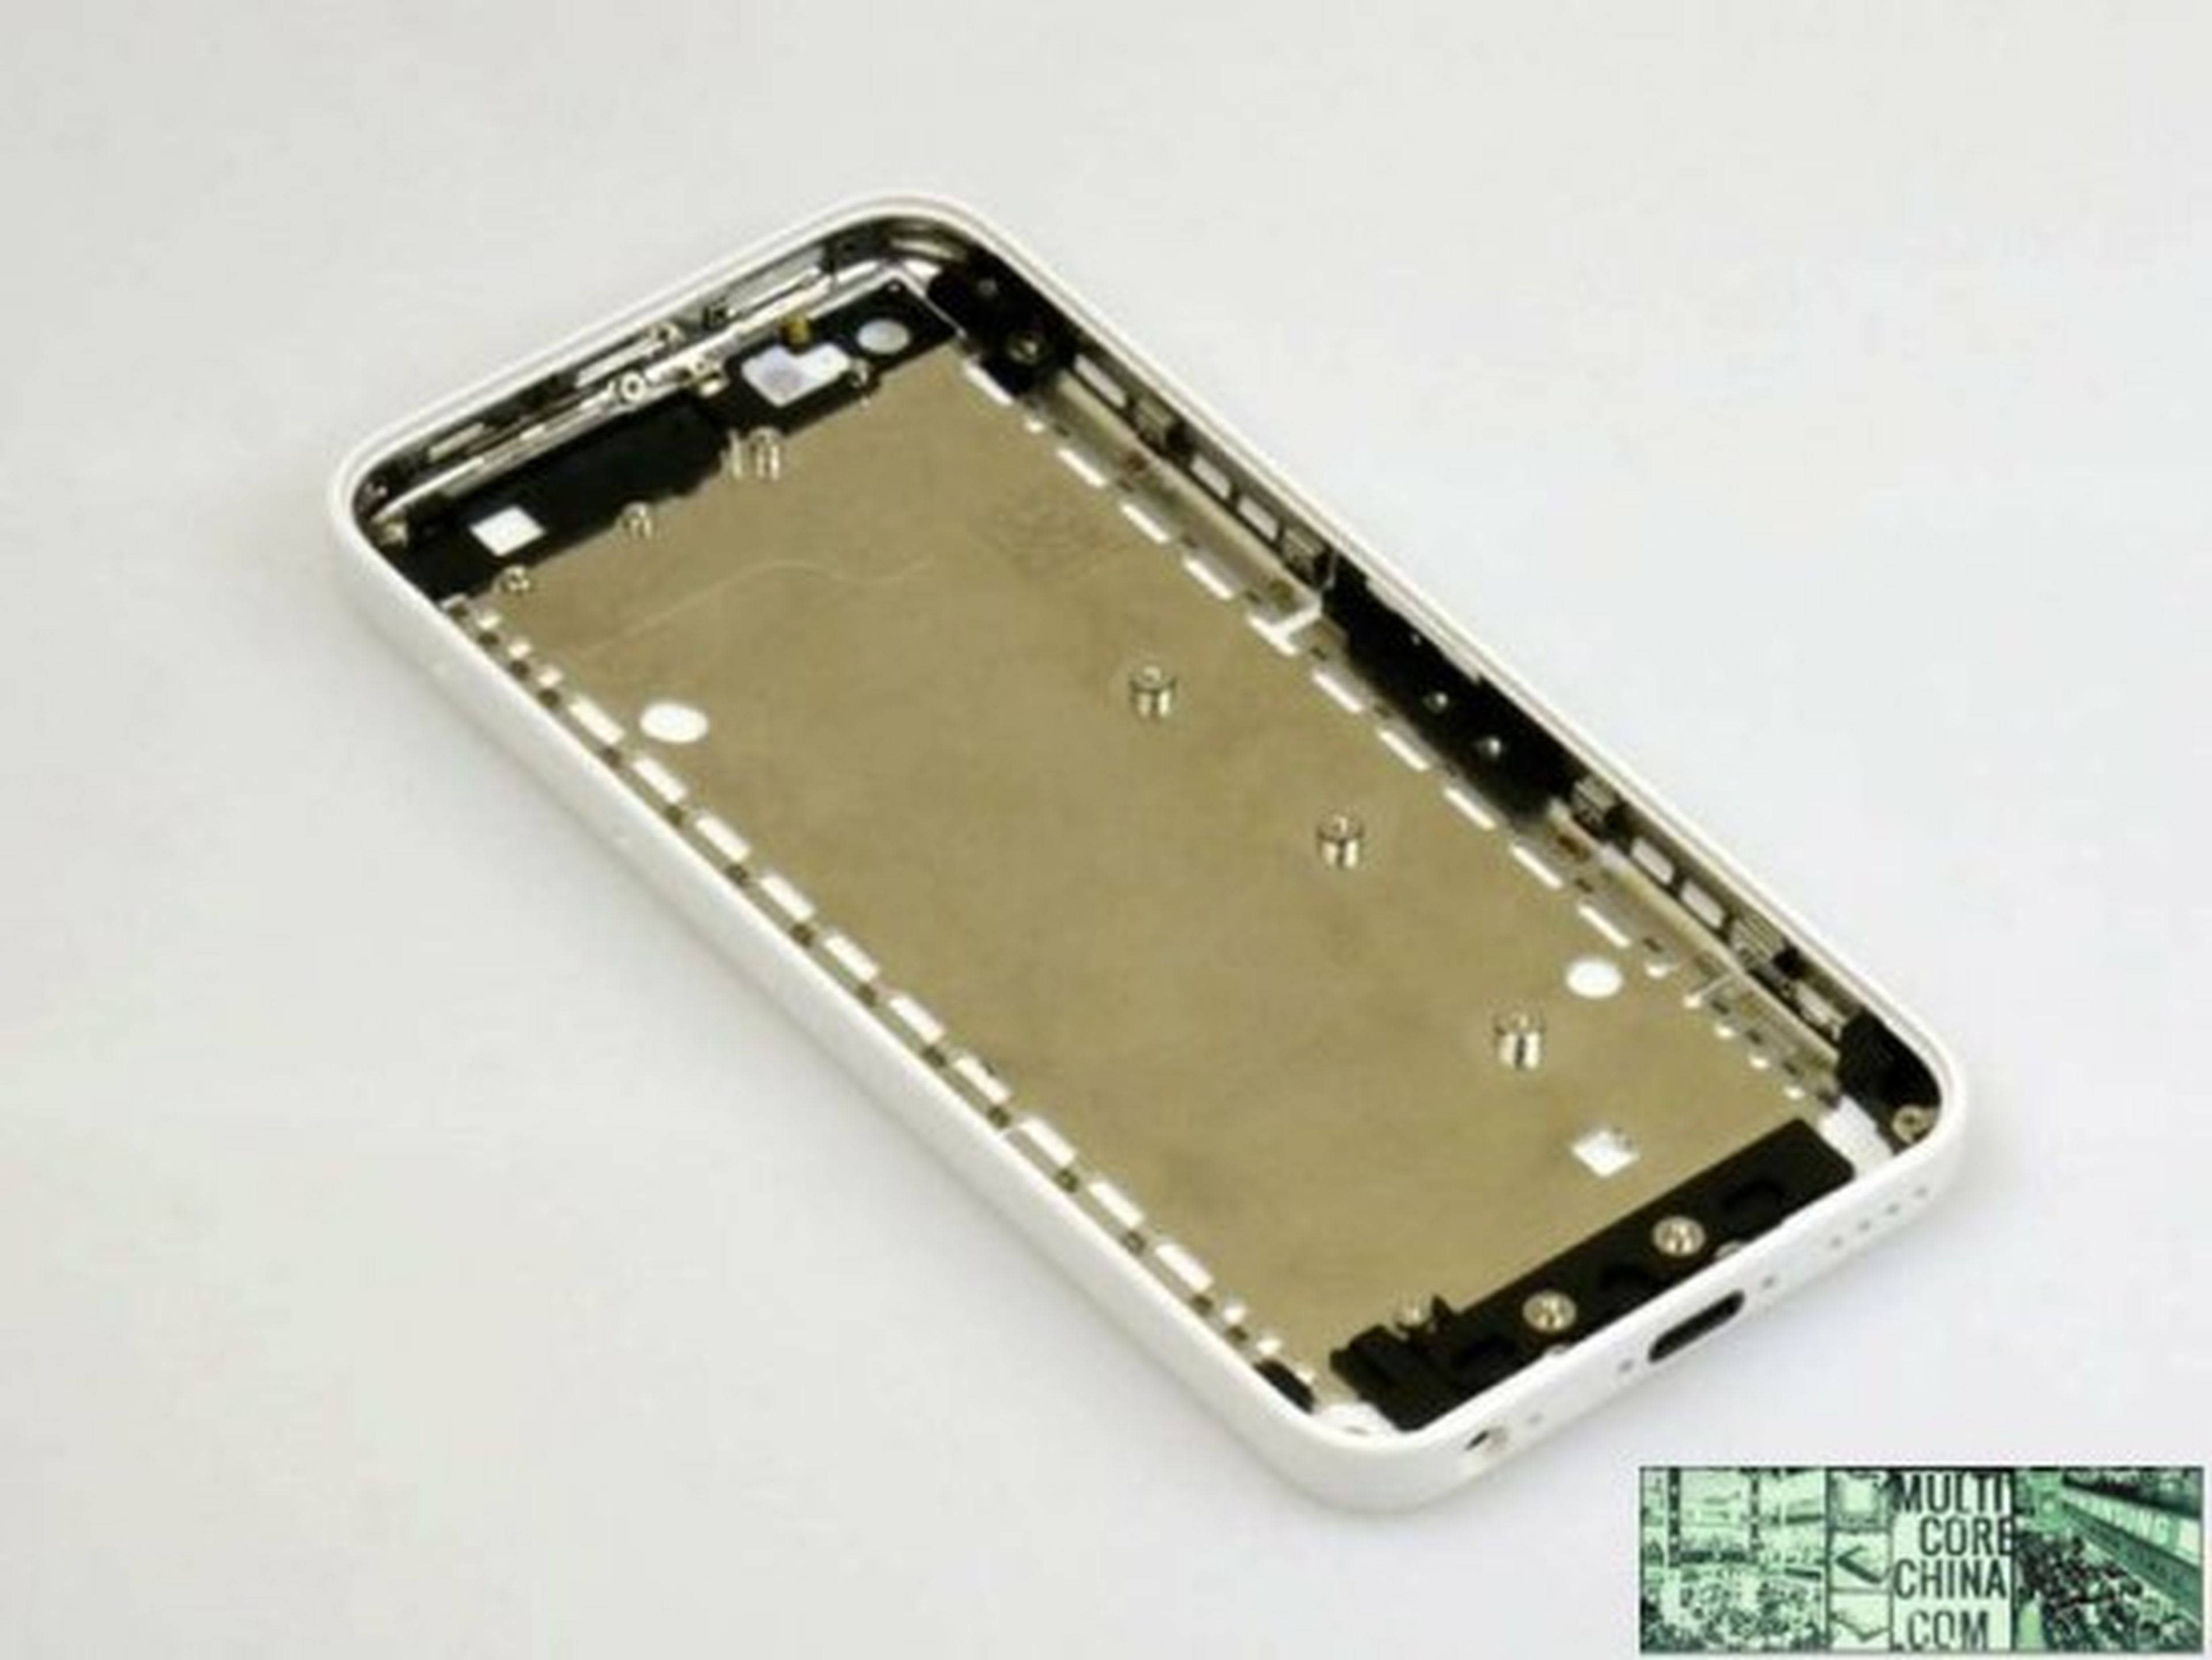 ¡El iPhone 5C o low cost ya se puede reservar en China!